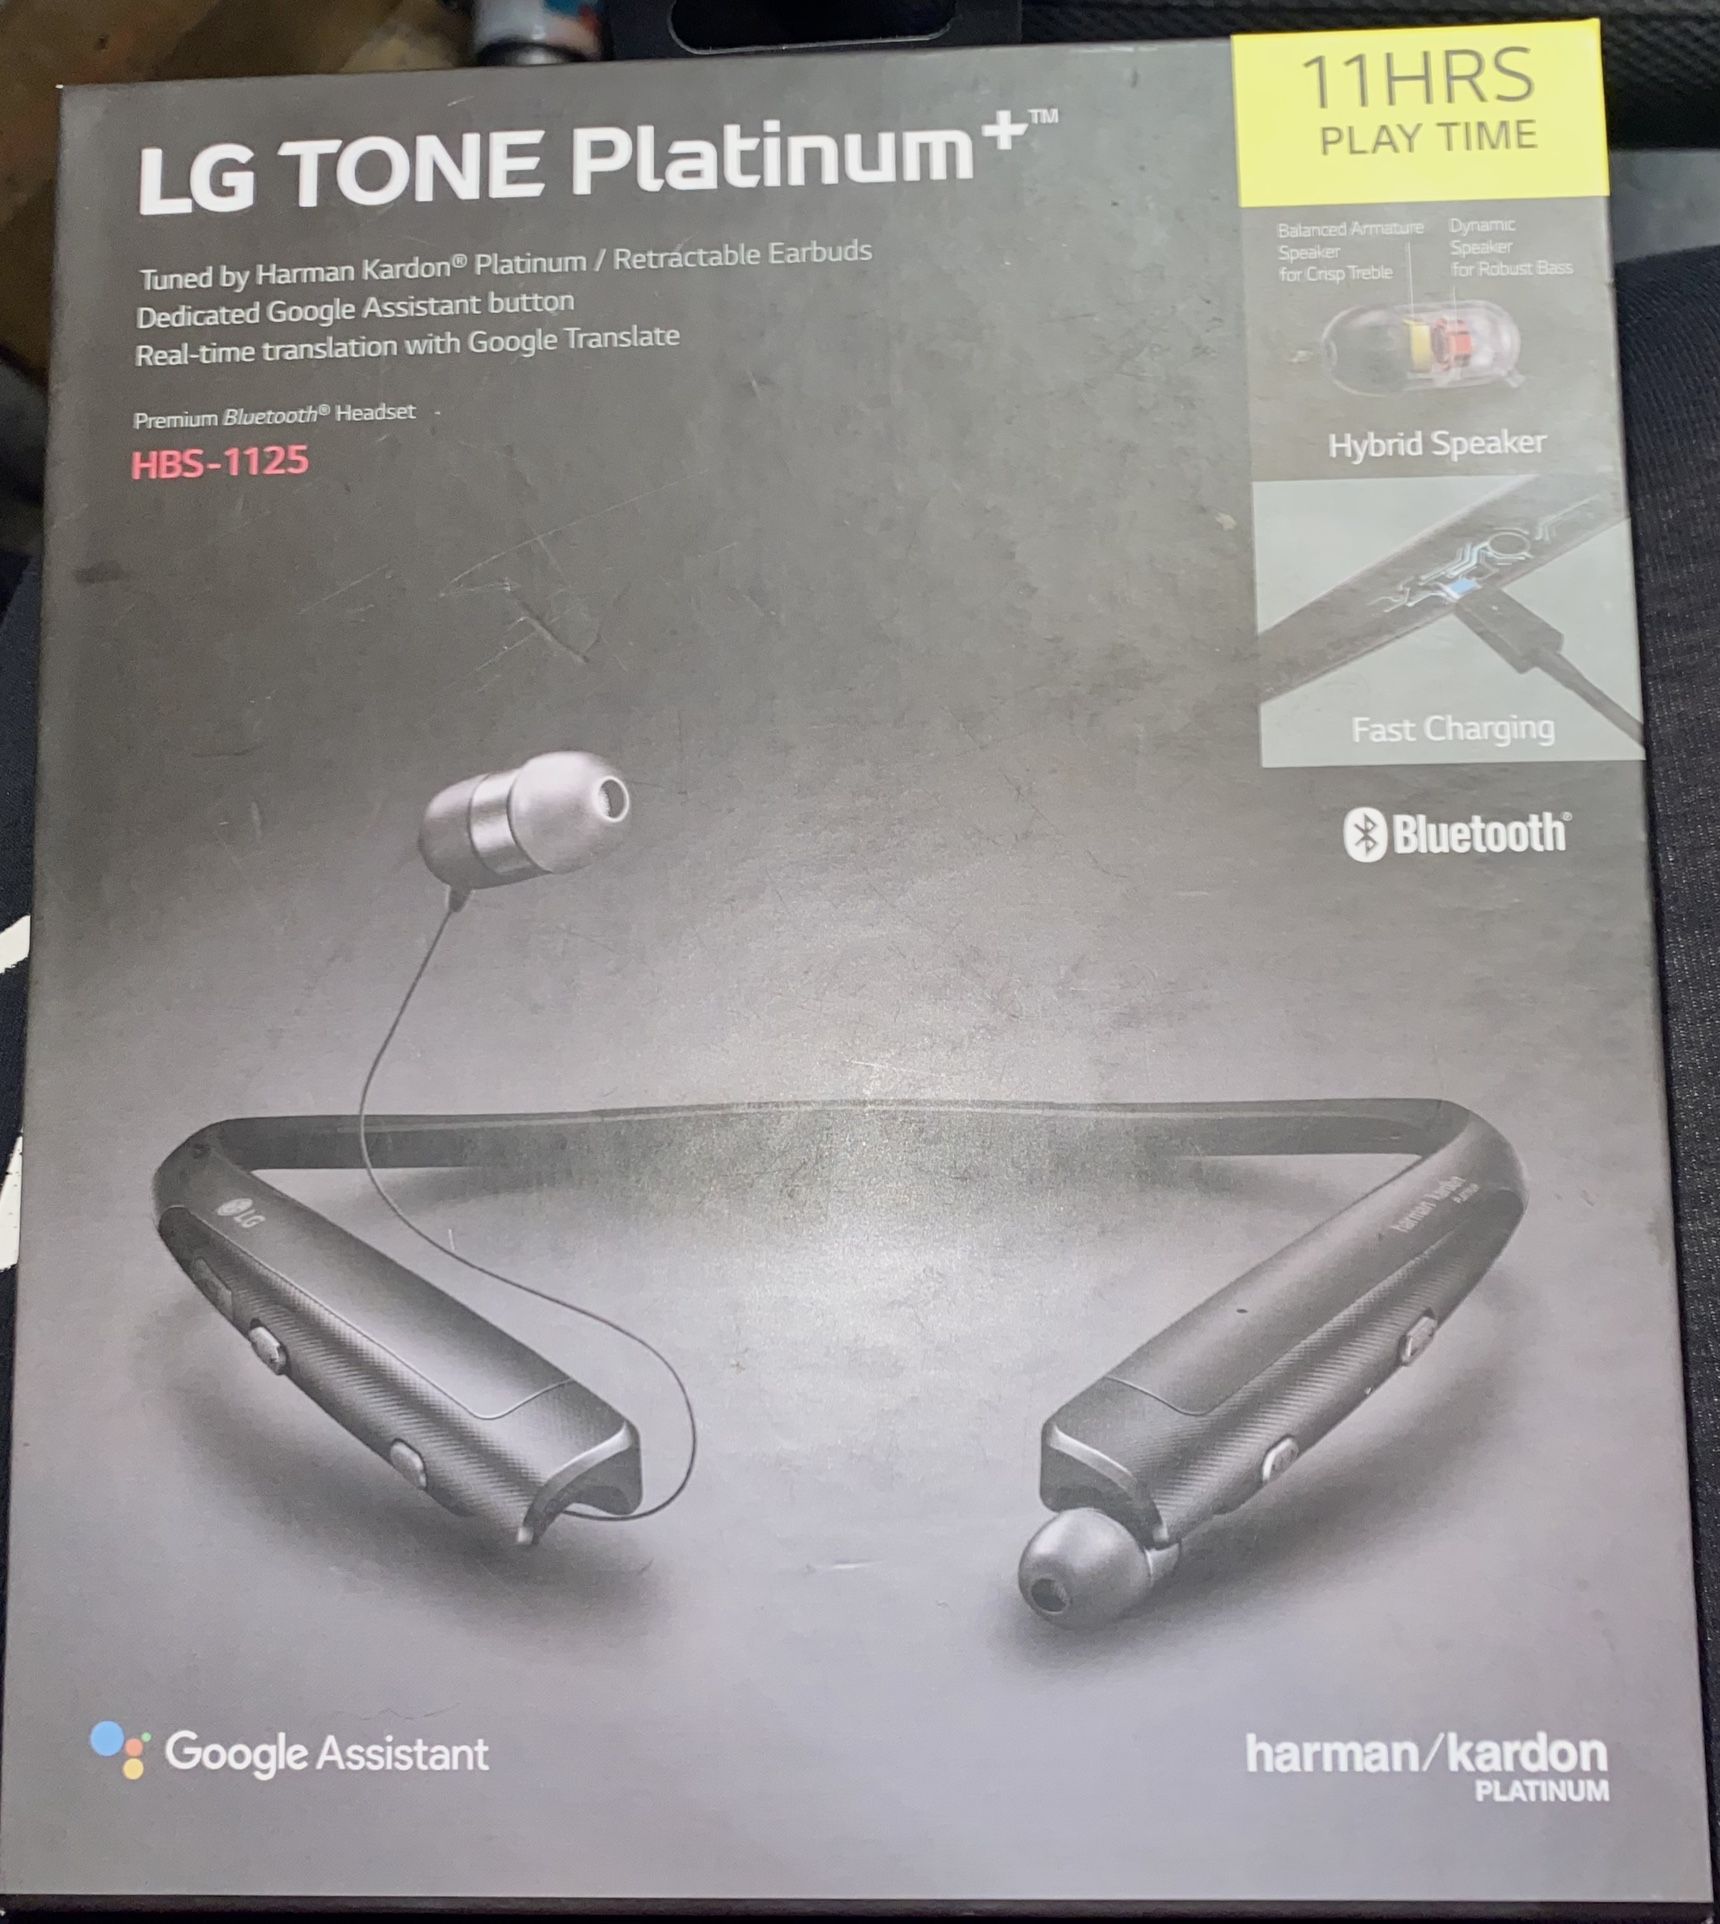 LG TONE Platinum + New